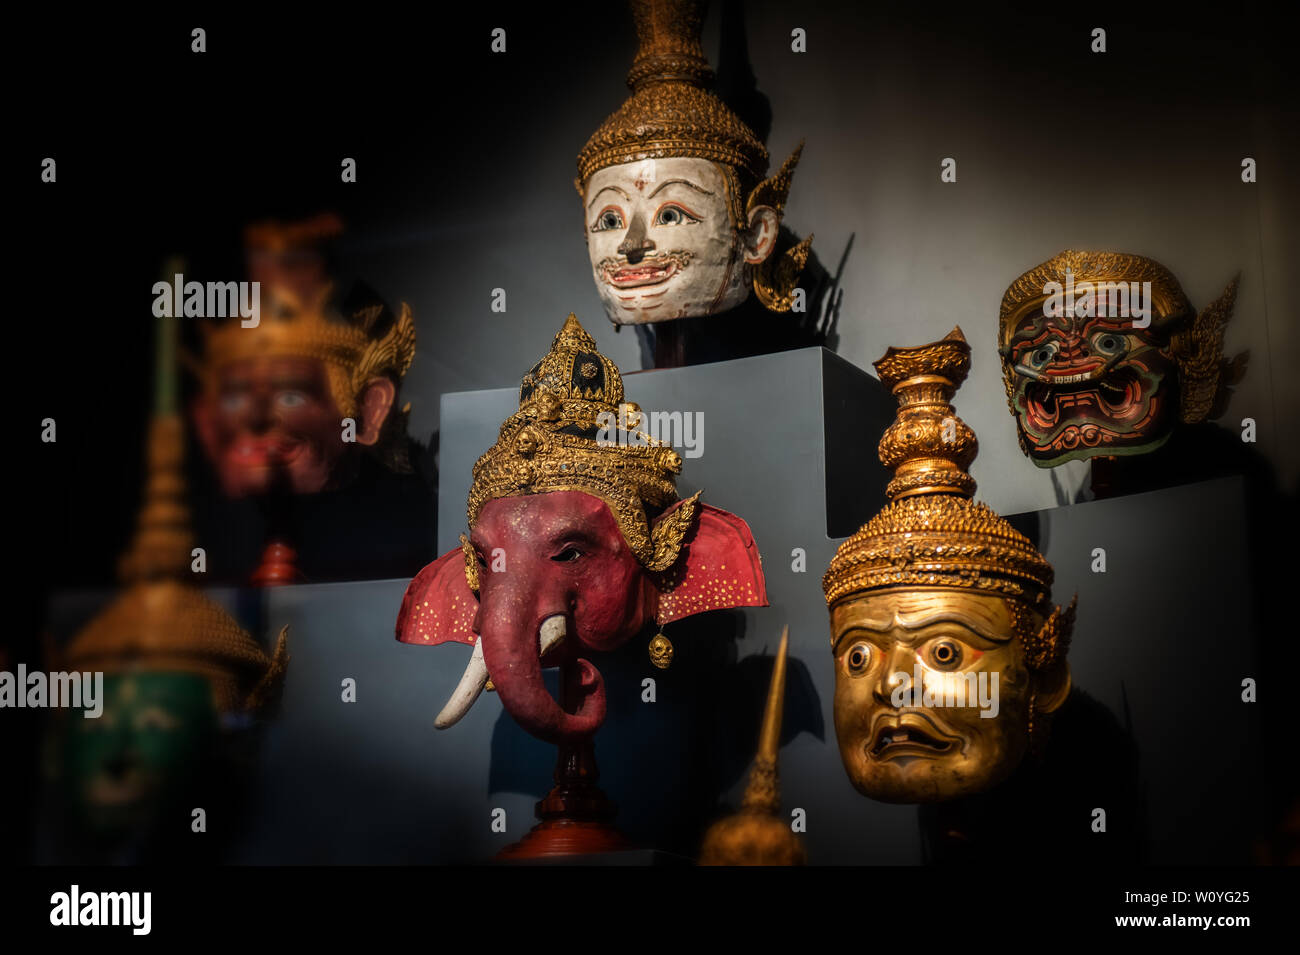 Artesanía tailandesa cabeza máscara personaje de ramayana épico para tailandés khon arte colección de baile con fondo oscuro y baja iluminación. Foto de stock